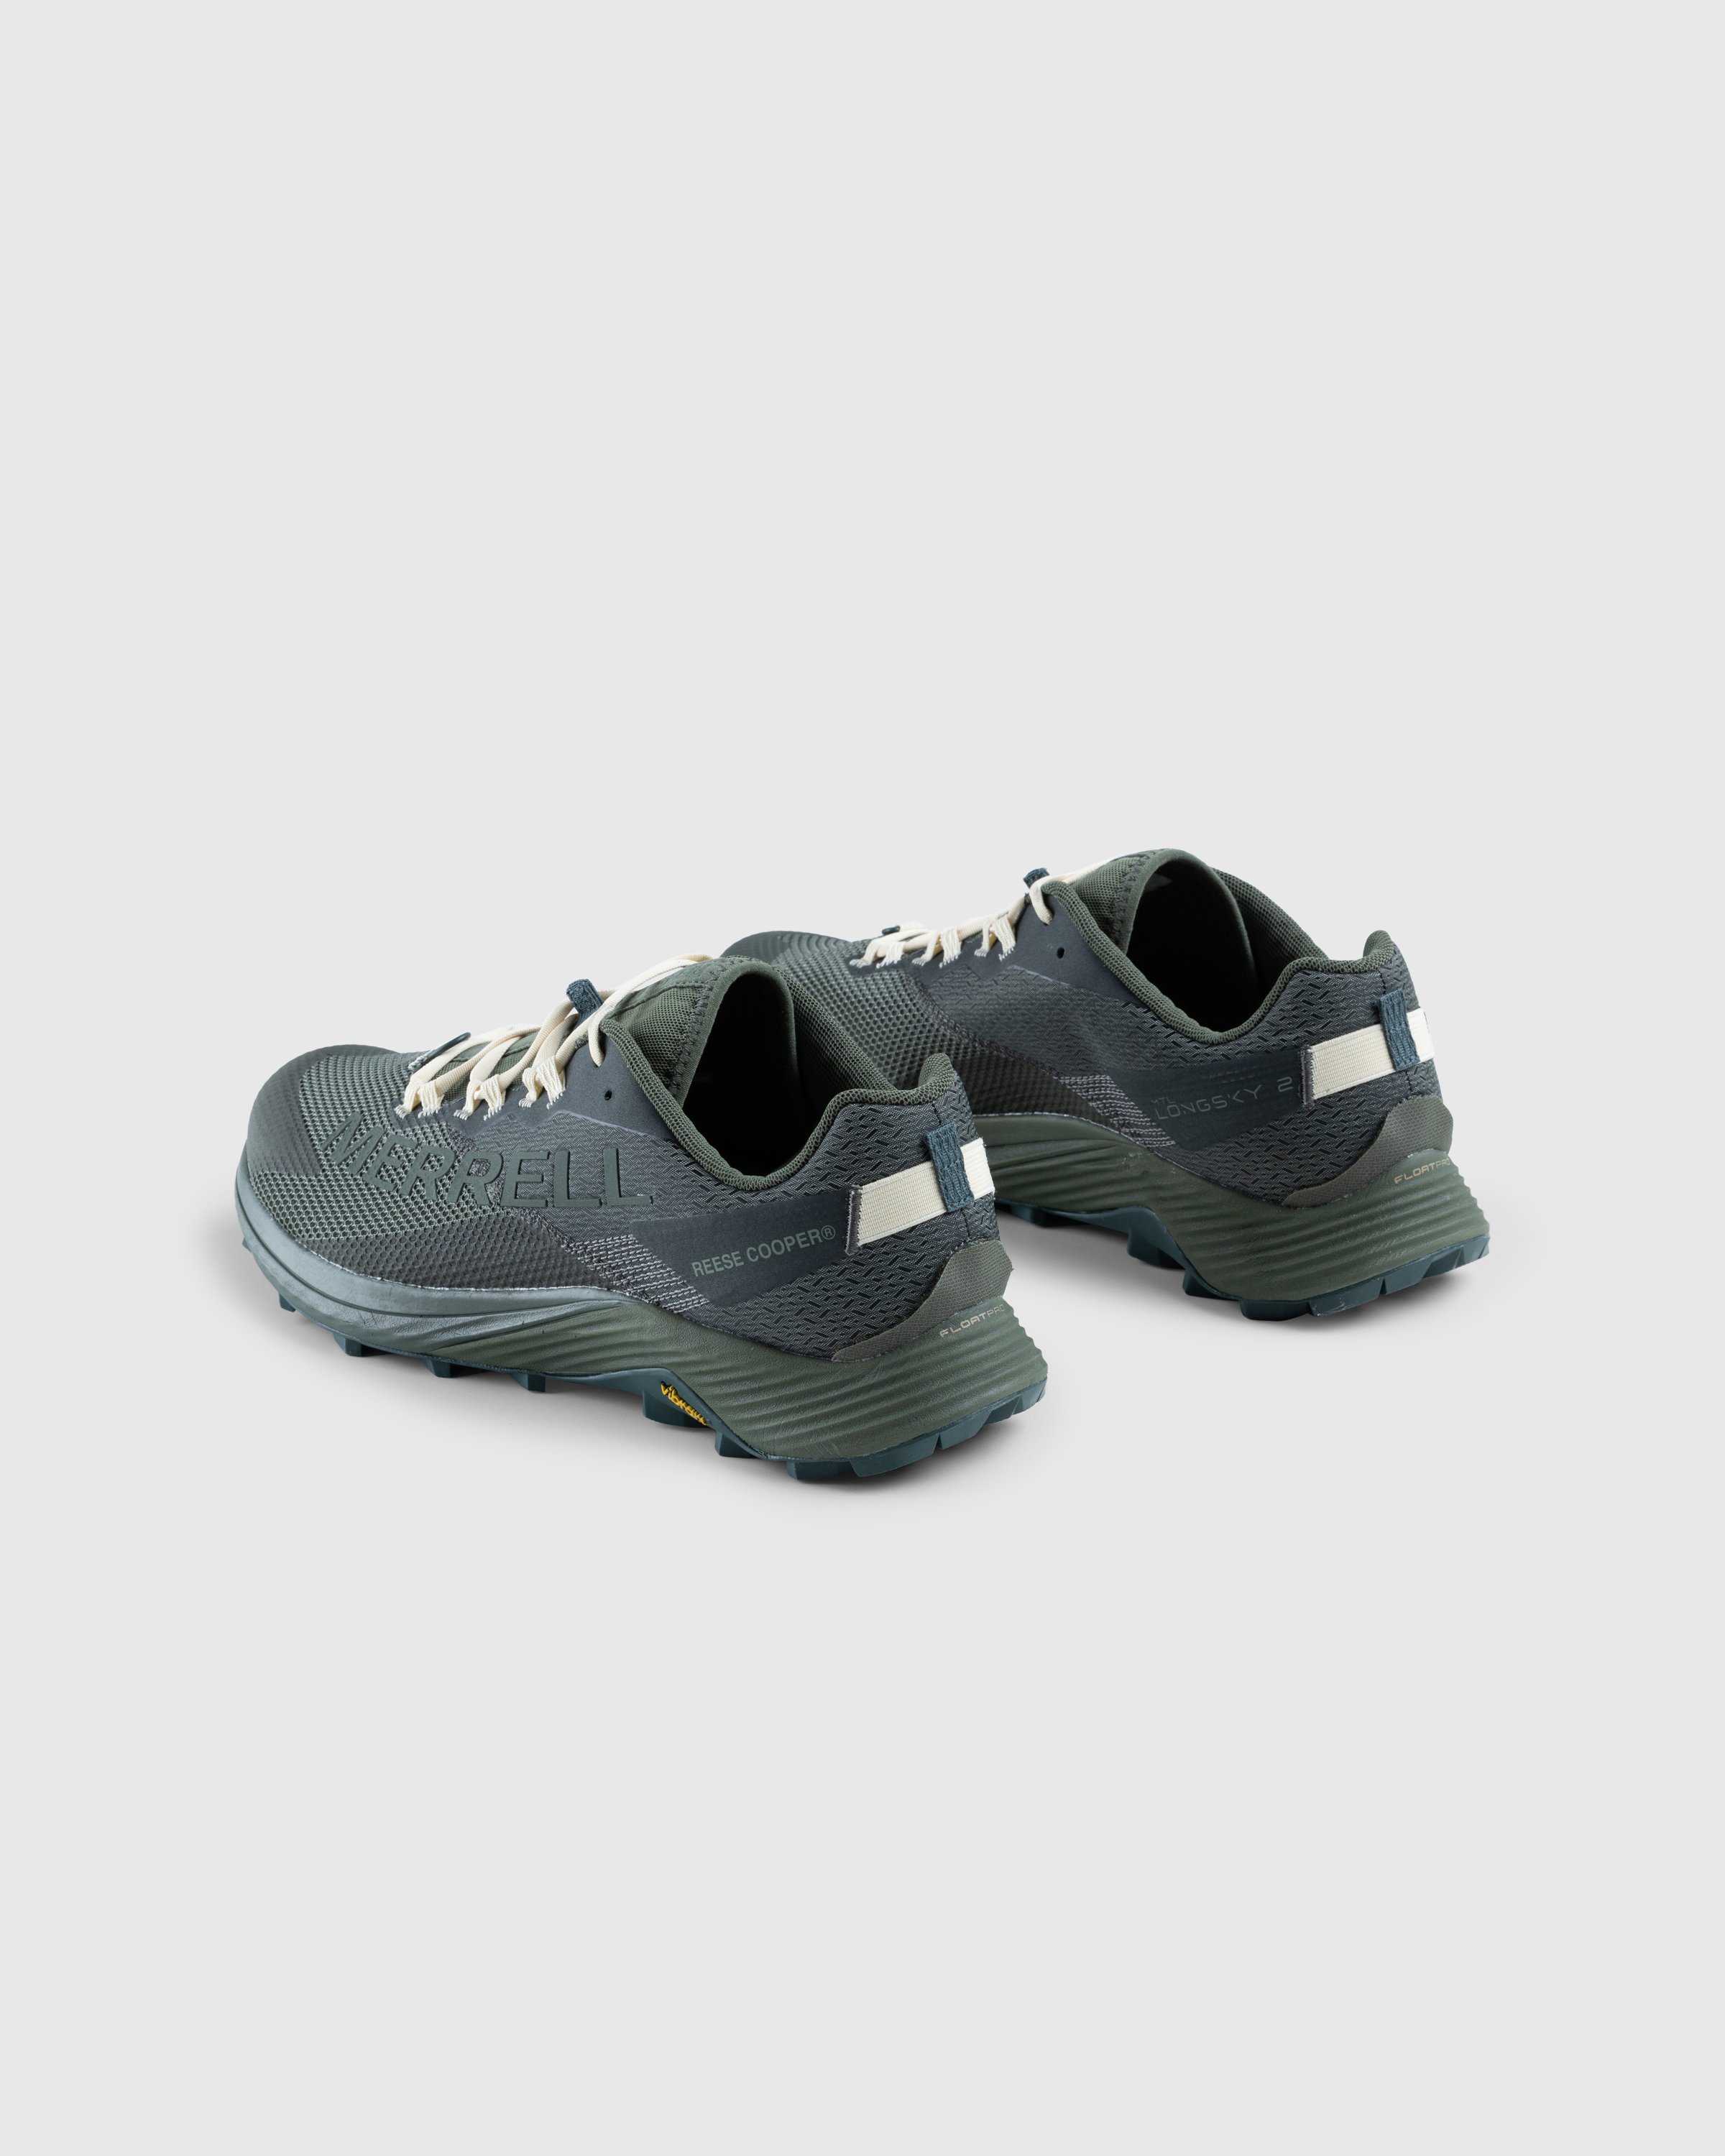 Merrell x Reese Cooper - MTL Long Sky 2 Clover - Footwear - Green - Image 4